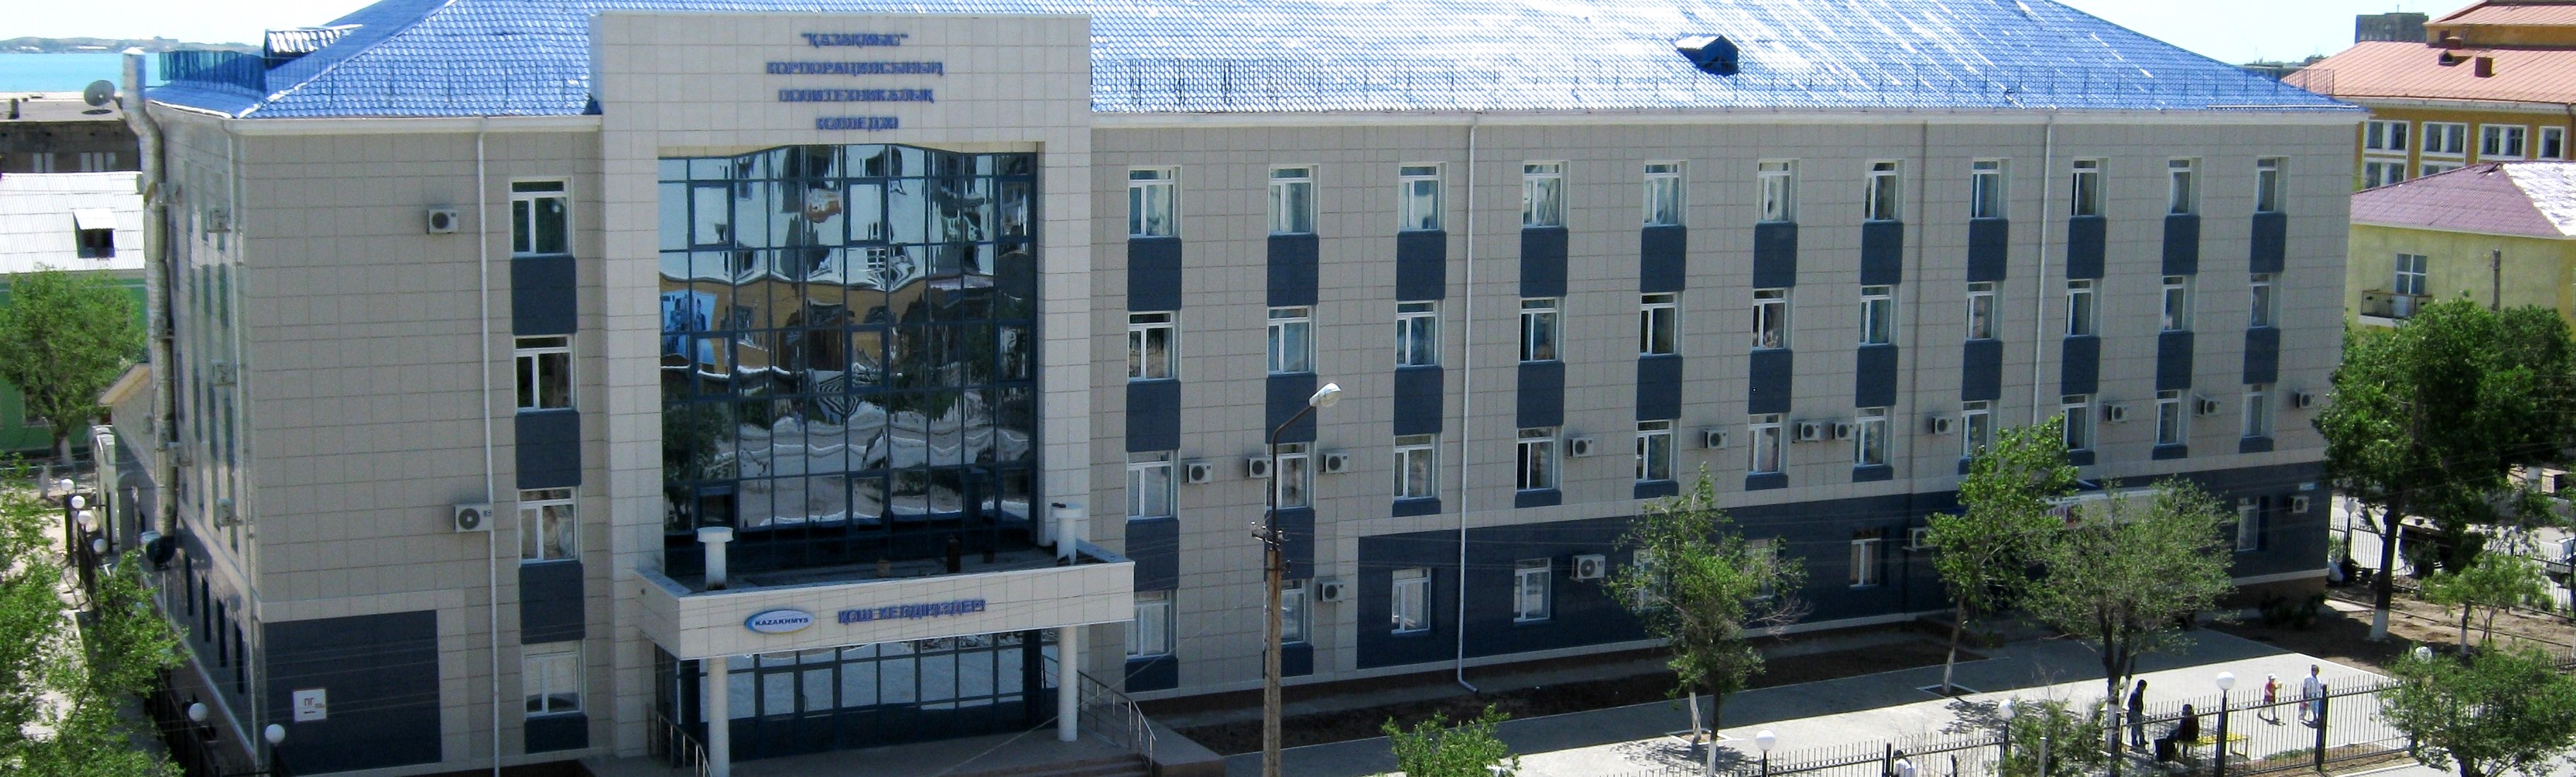 Политехнический колледж корпорации «Казахмыс» главное фото